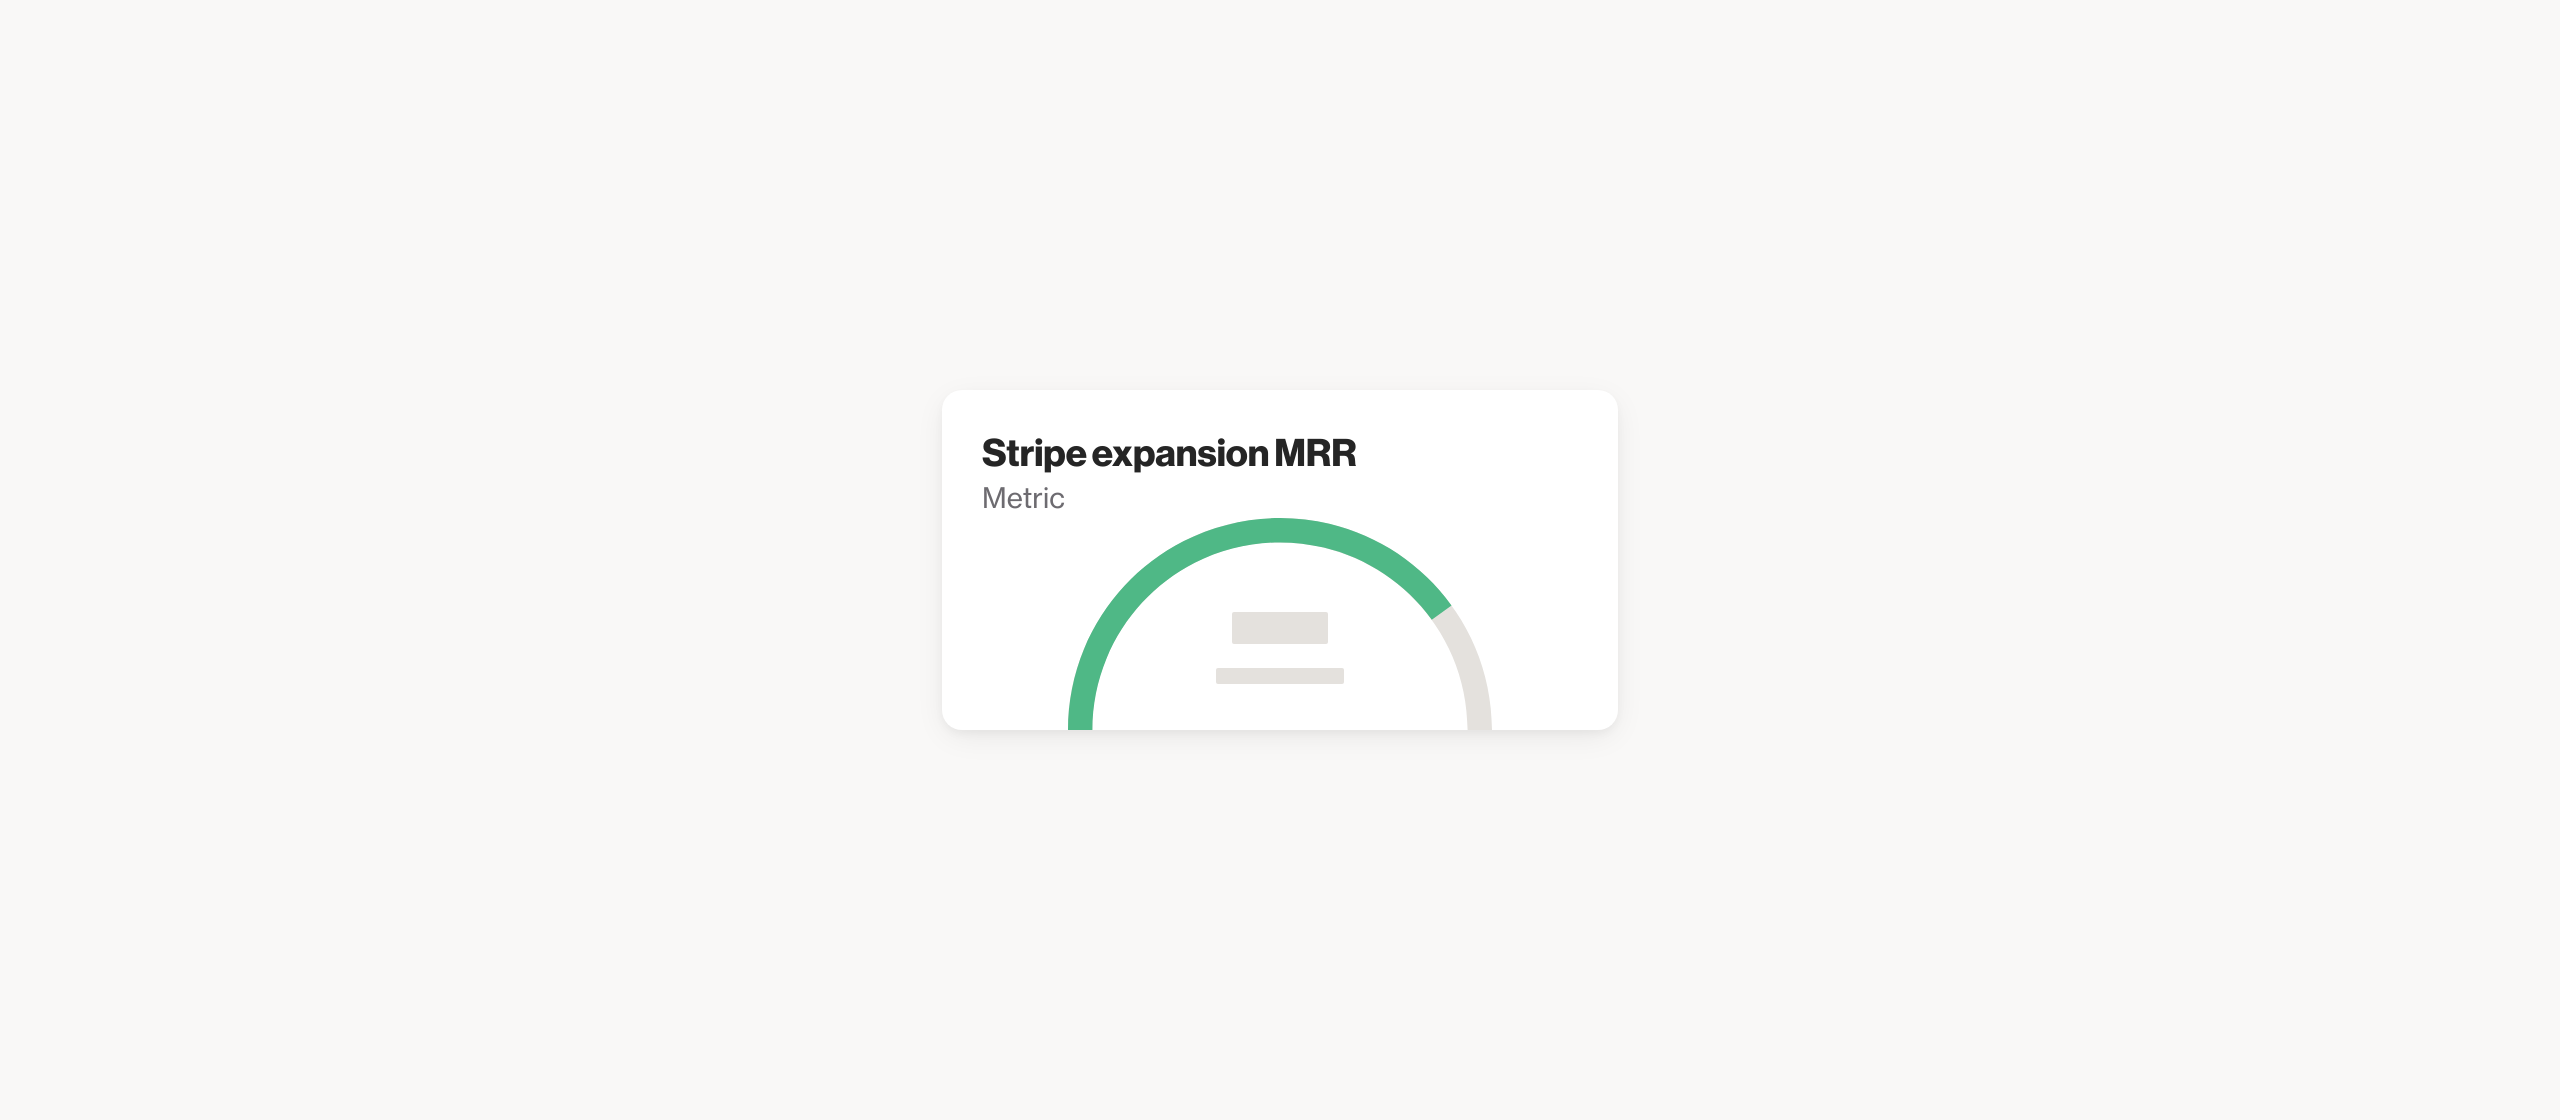 Stripe expansion MRR